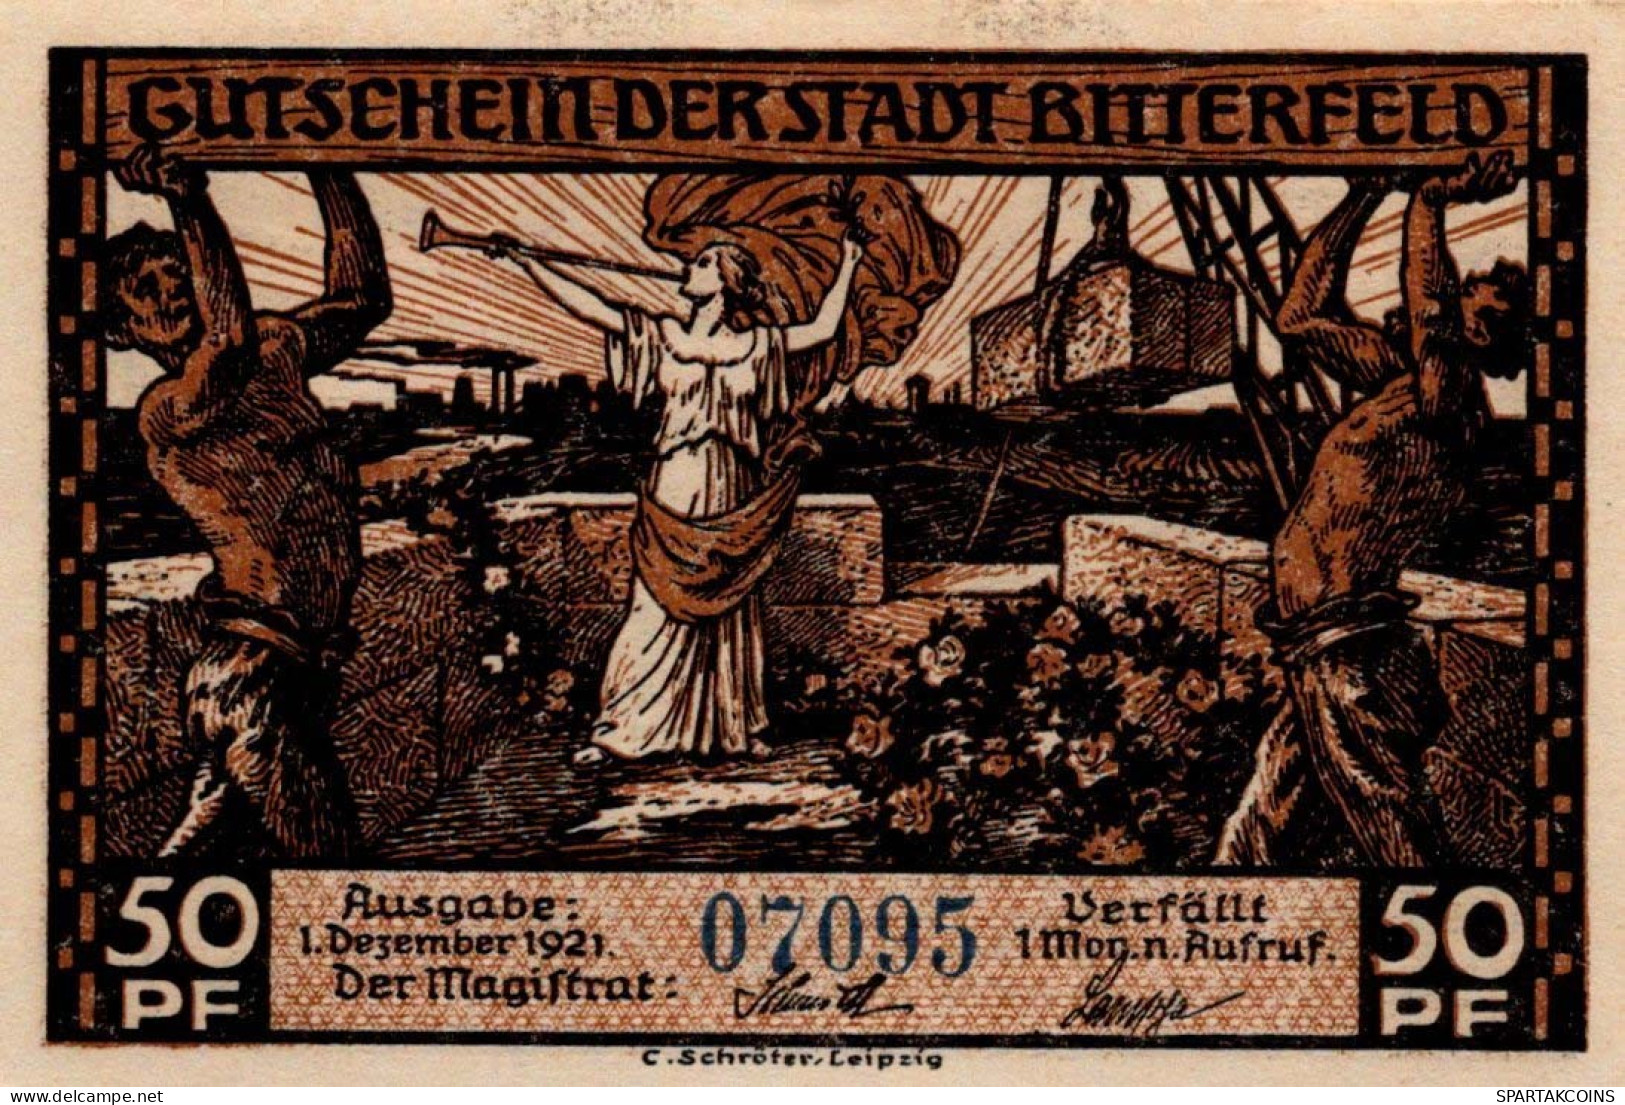 50 PFENNIG 1921 Stadt BITTERFIELD Westphalia UNC DEUTSCHLAND Notgeld #PA224 - [11] Local Banknote Issues